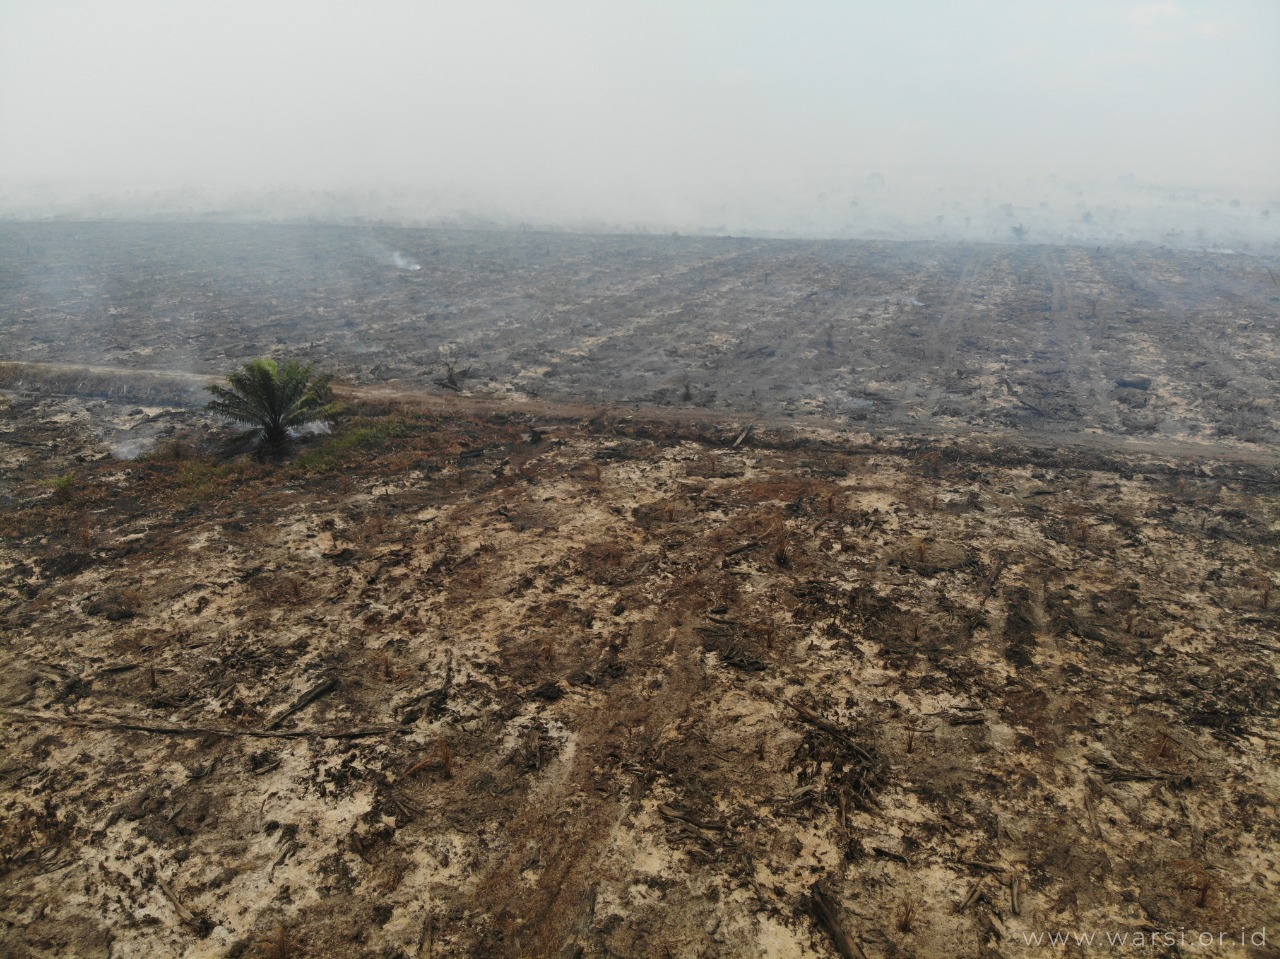 PT ATGA’s peatland concession areas burned again in 2019. ©KKI-Warsi